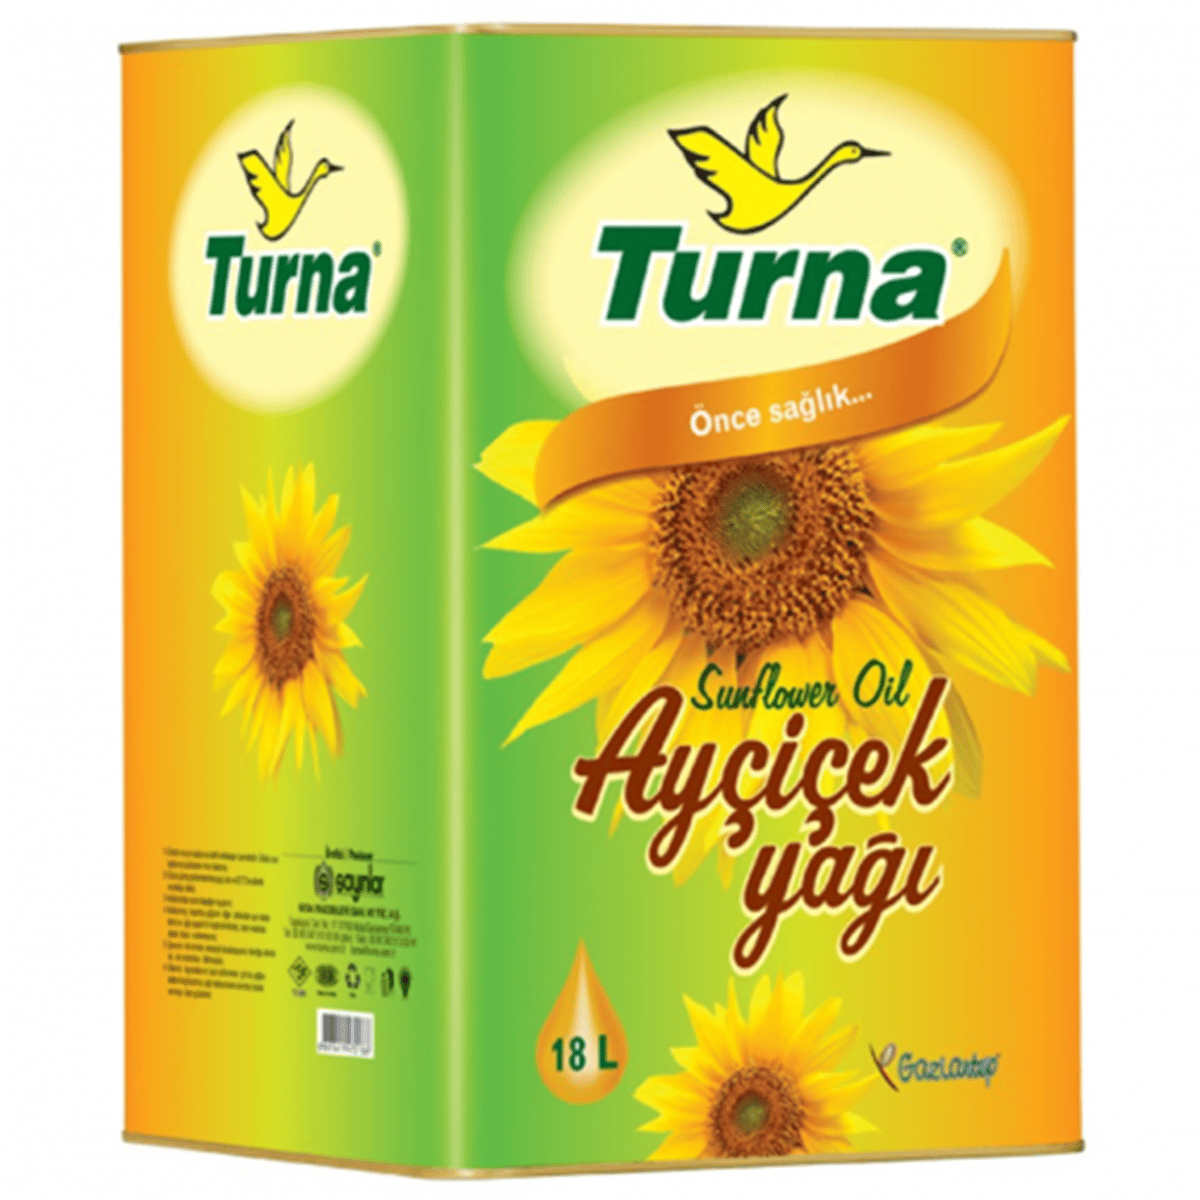 TURNA AYCICEK YAGI 18 LT | Gaziantep Gross Toptan Market